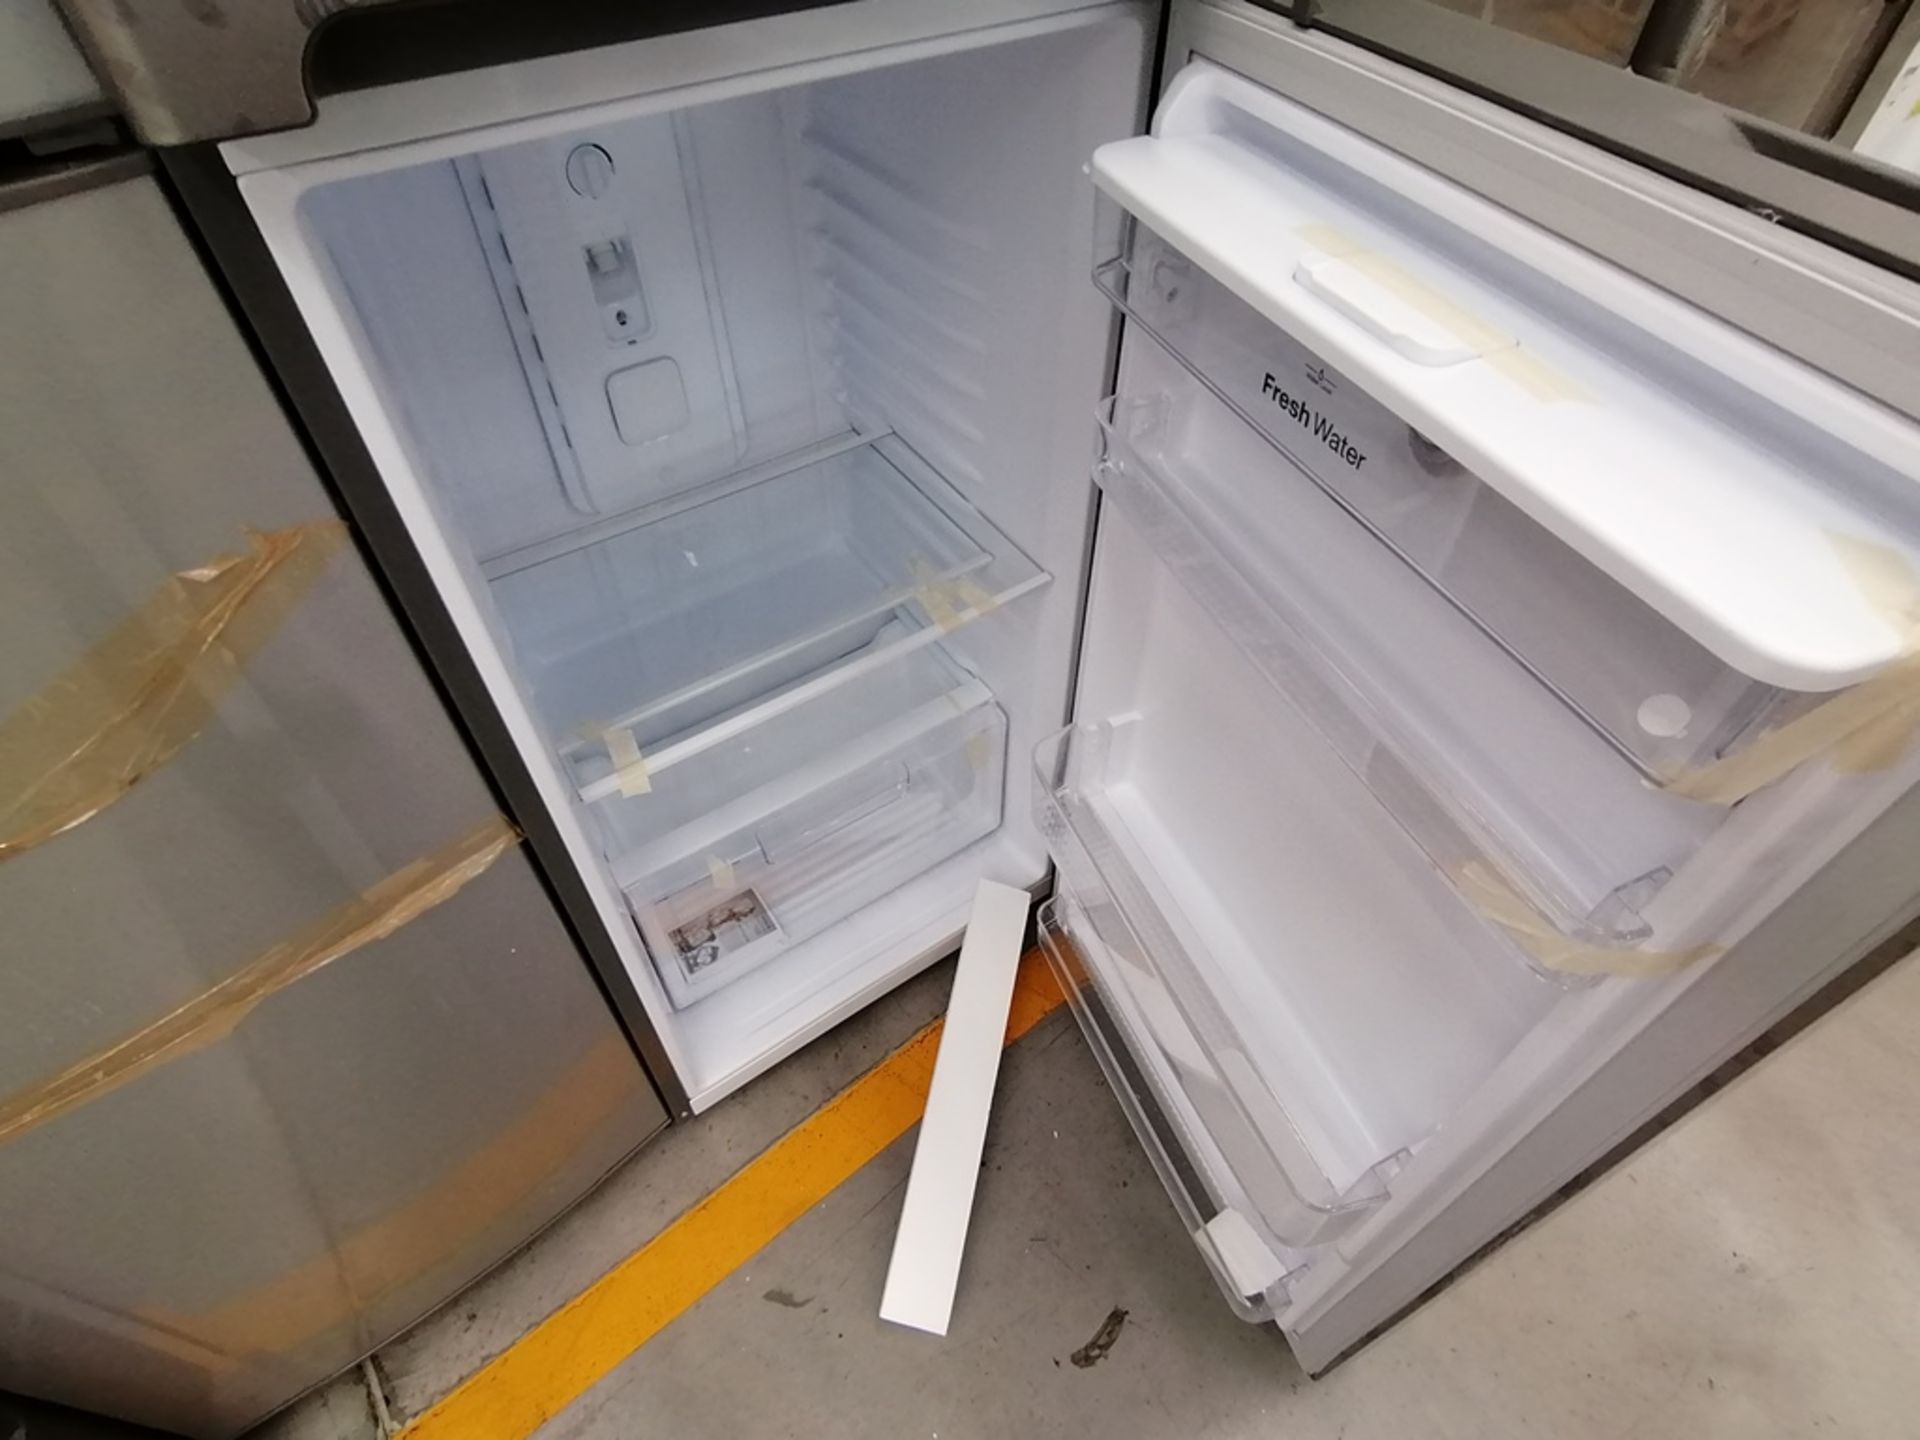 Lote de 2 Refrigeradores, Incluye: 1 Refrigerador con dispensador de agua, Marca Winia, Modelo DFR4 - Image 8 of 16